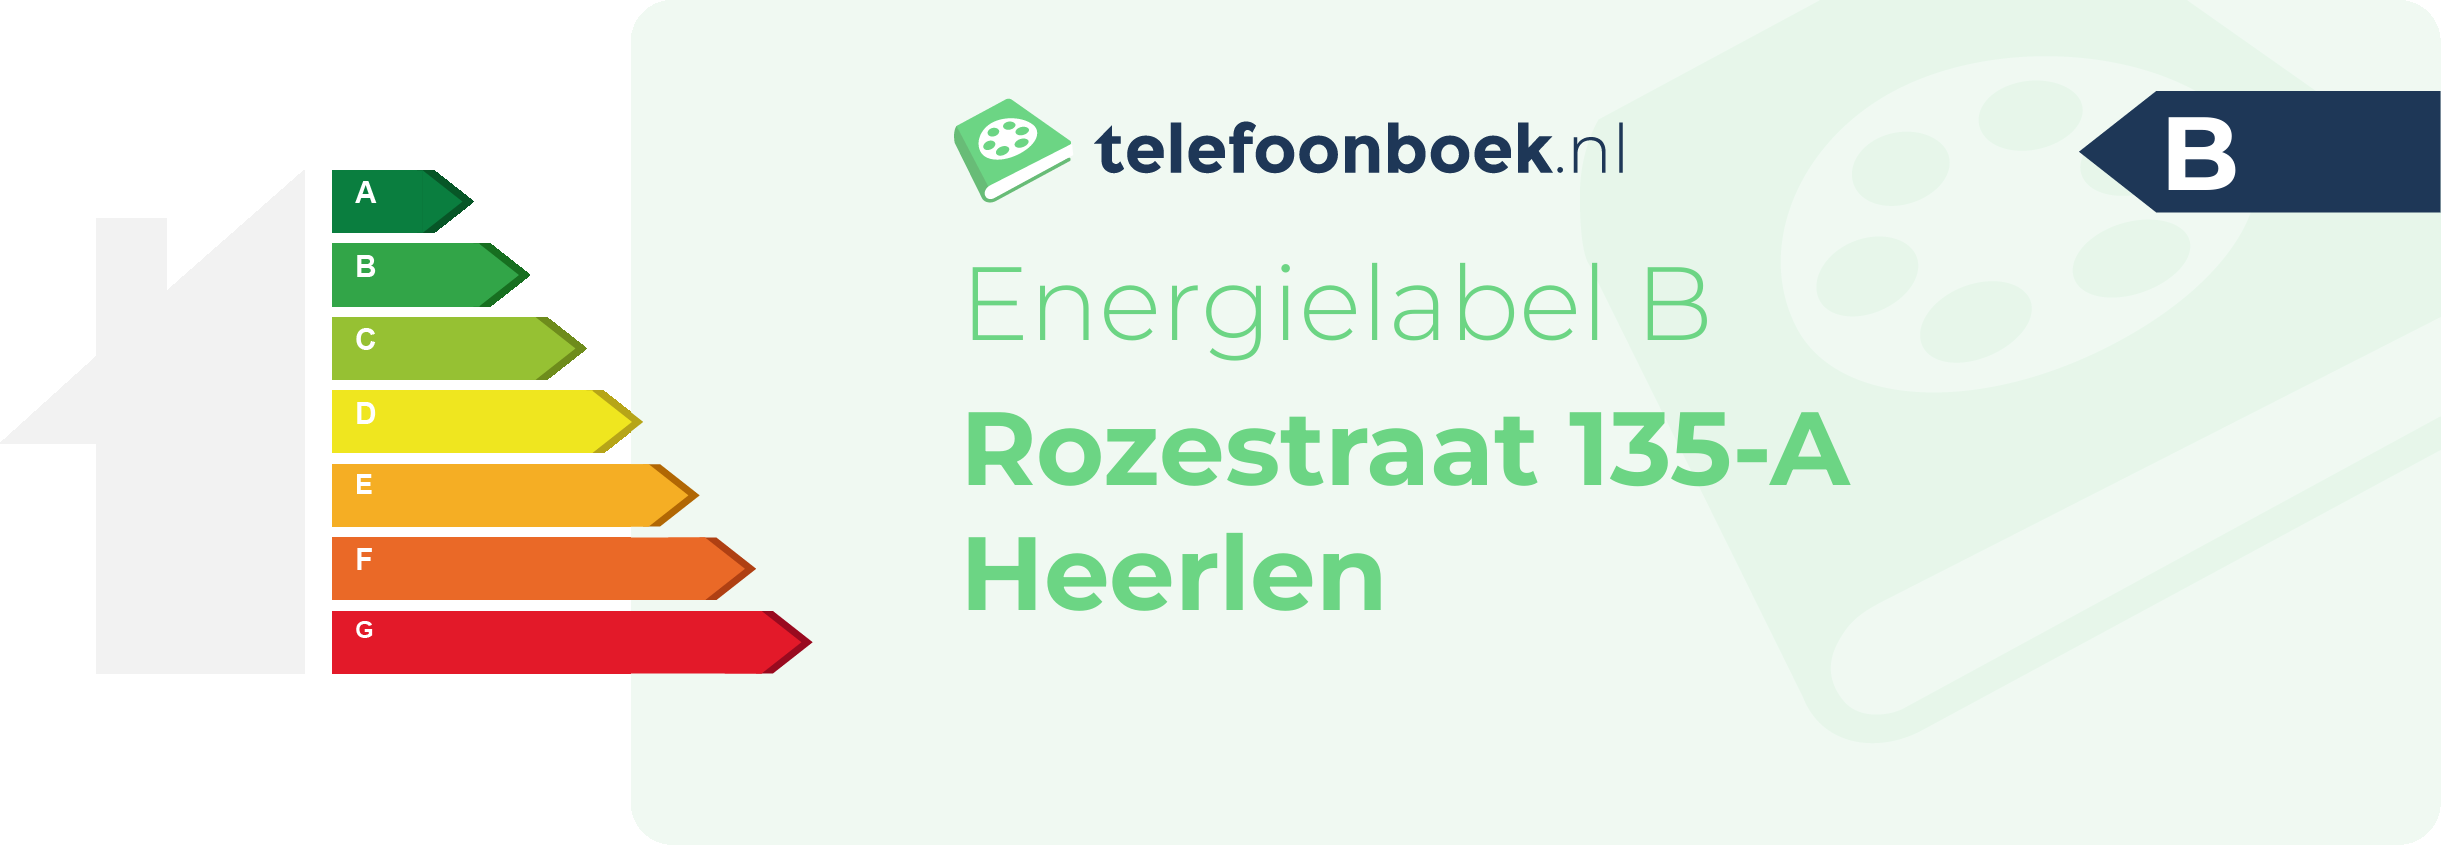 Energielabel Rozestraat 135-A Heerlen